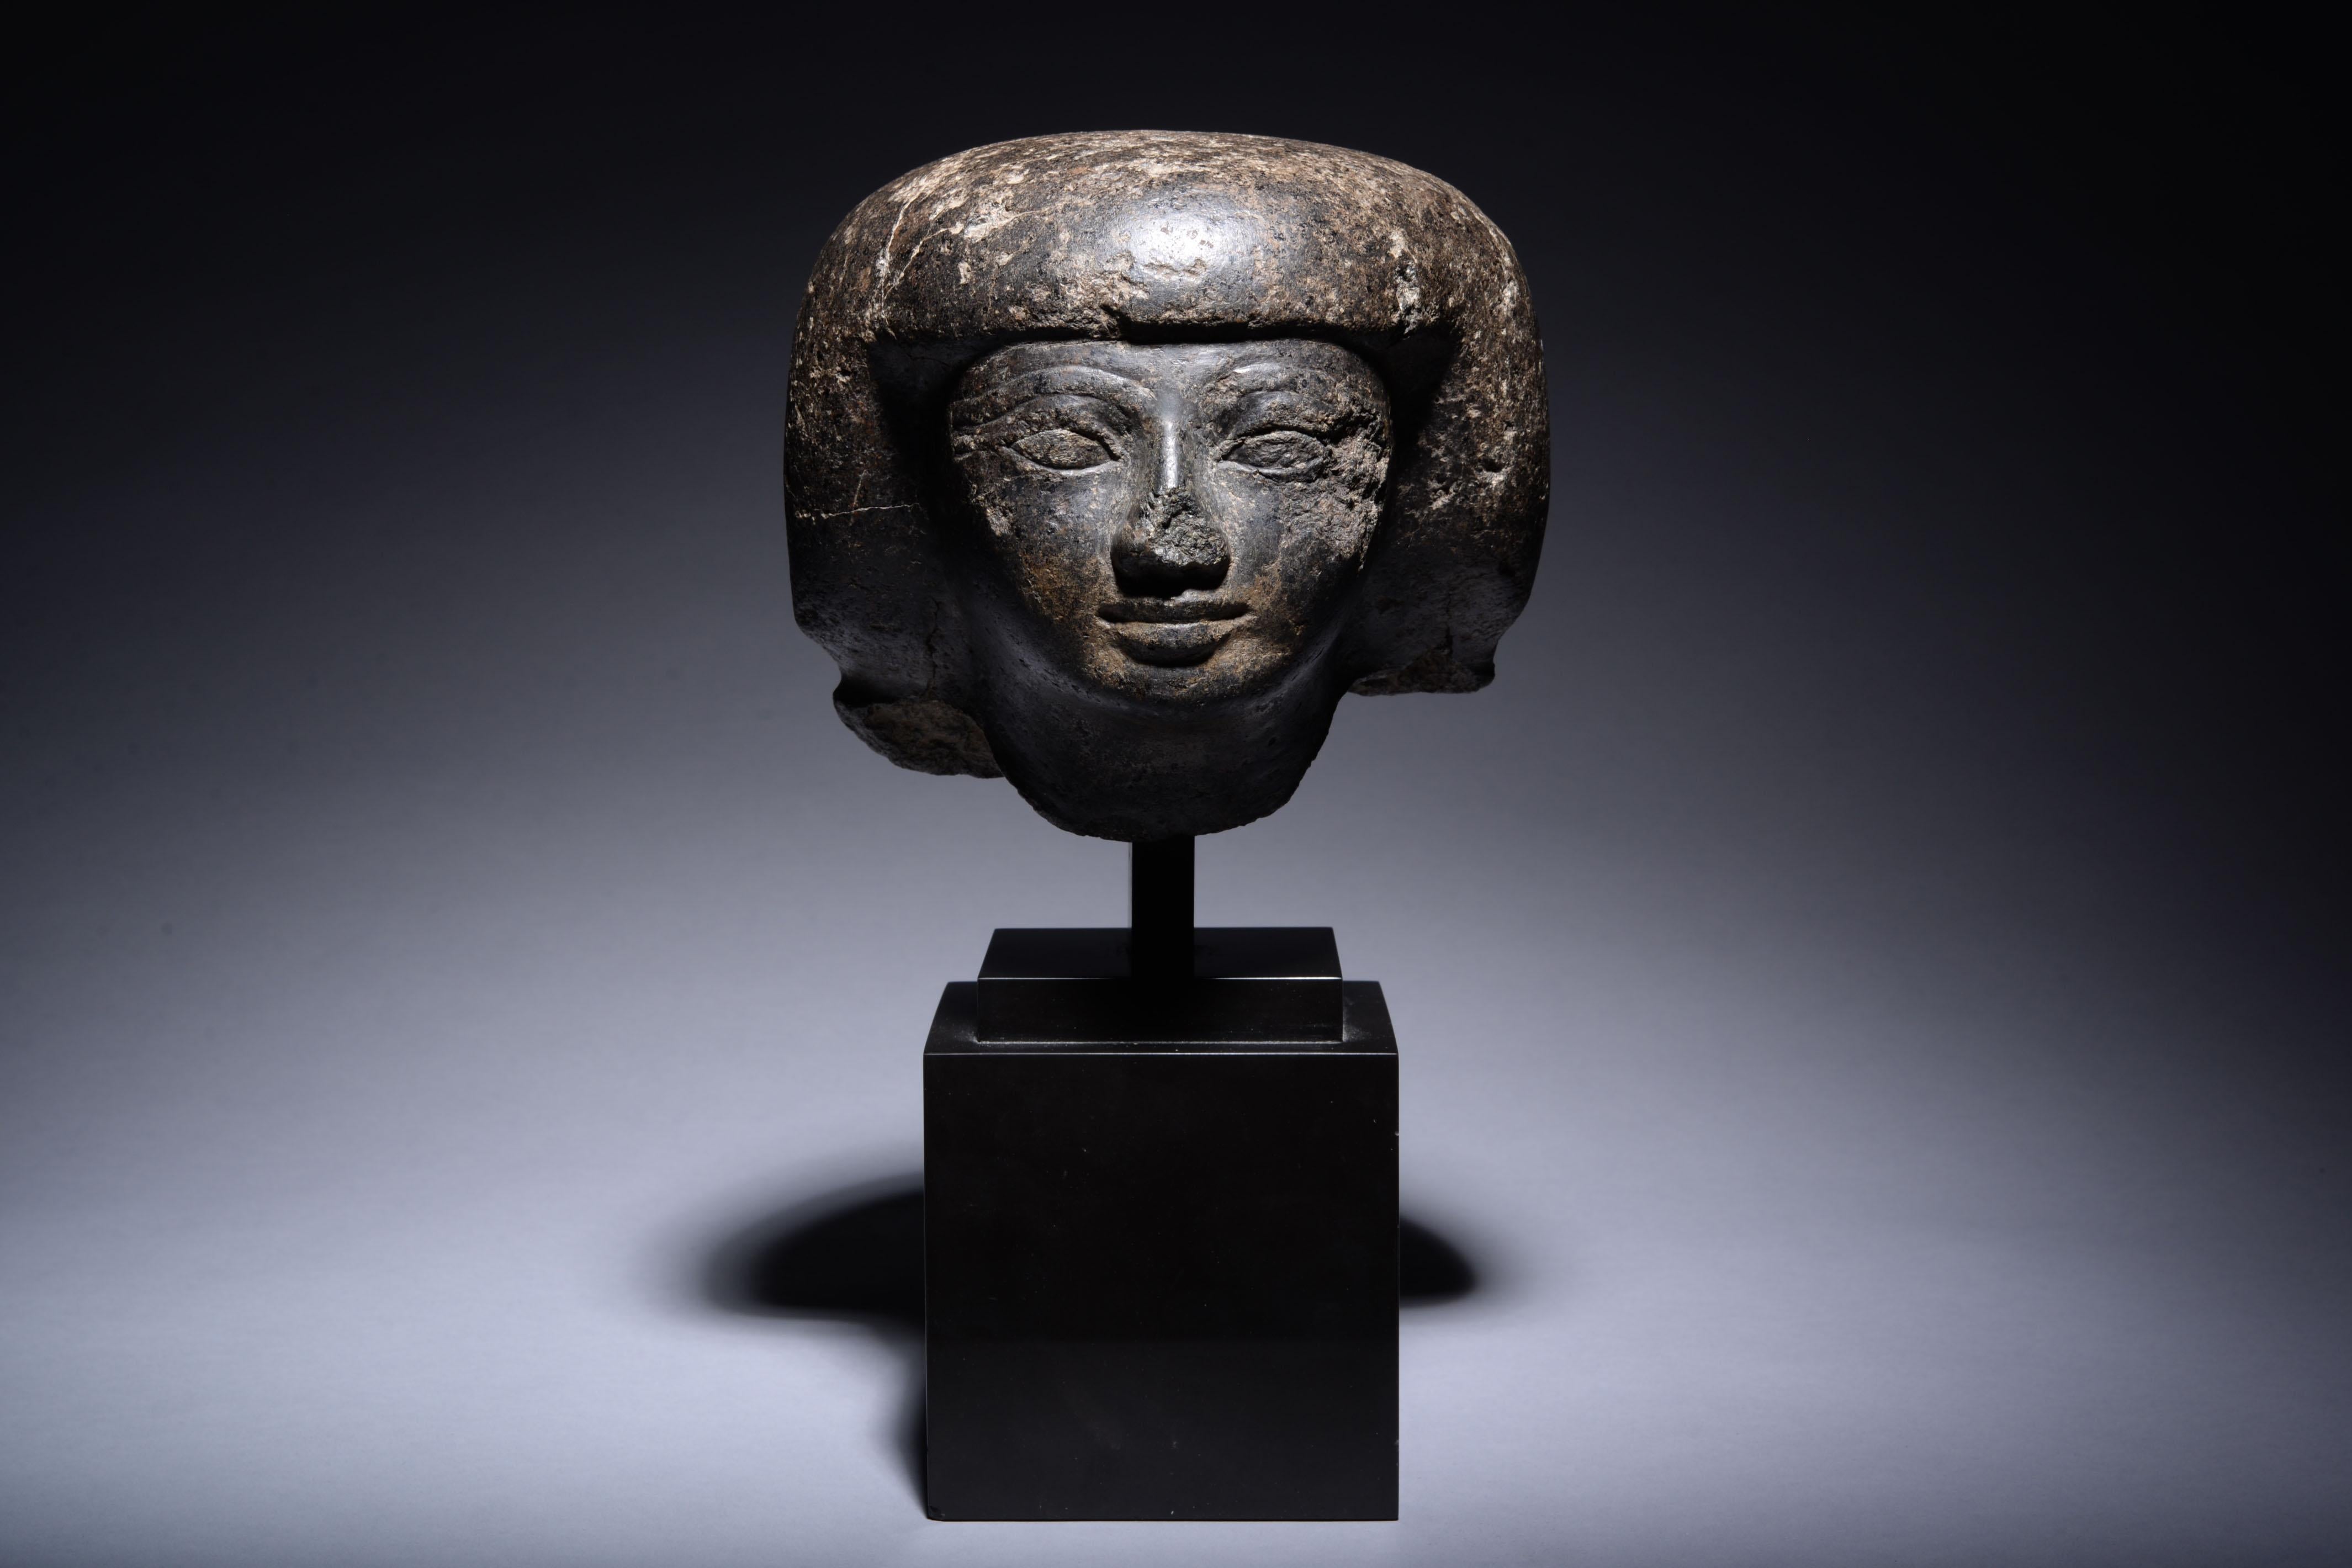 Ägyptischer Kopf eines Mannes, aus Granit geschnitzt. 18. Dynastie, ca. 1550-1292 v. Chr.

Dieser aus schönem dunklem Granit gearbeitete Kopf stellt eine elitäre Person dar, vielleicht einen Regierungsbeamten. Der Mann hat ein rundes, fleischiges